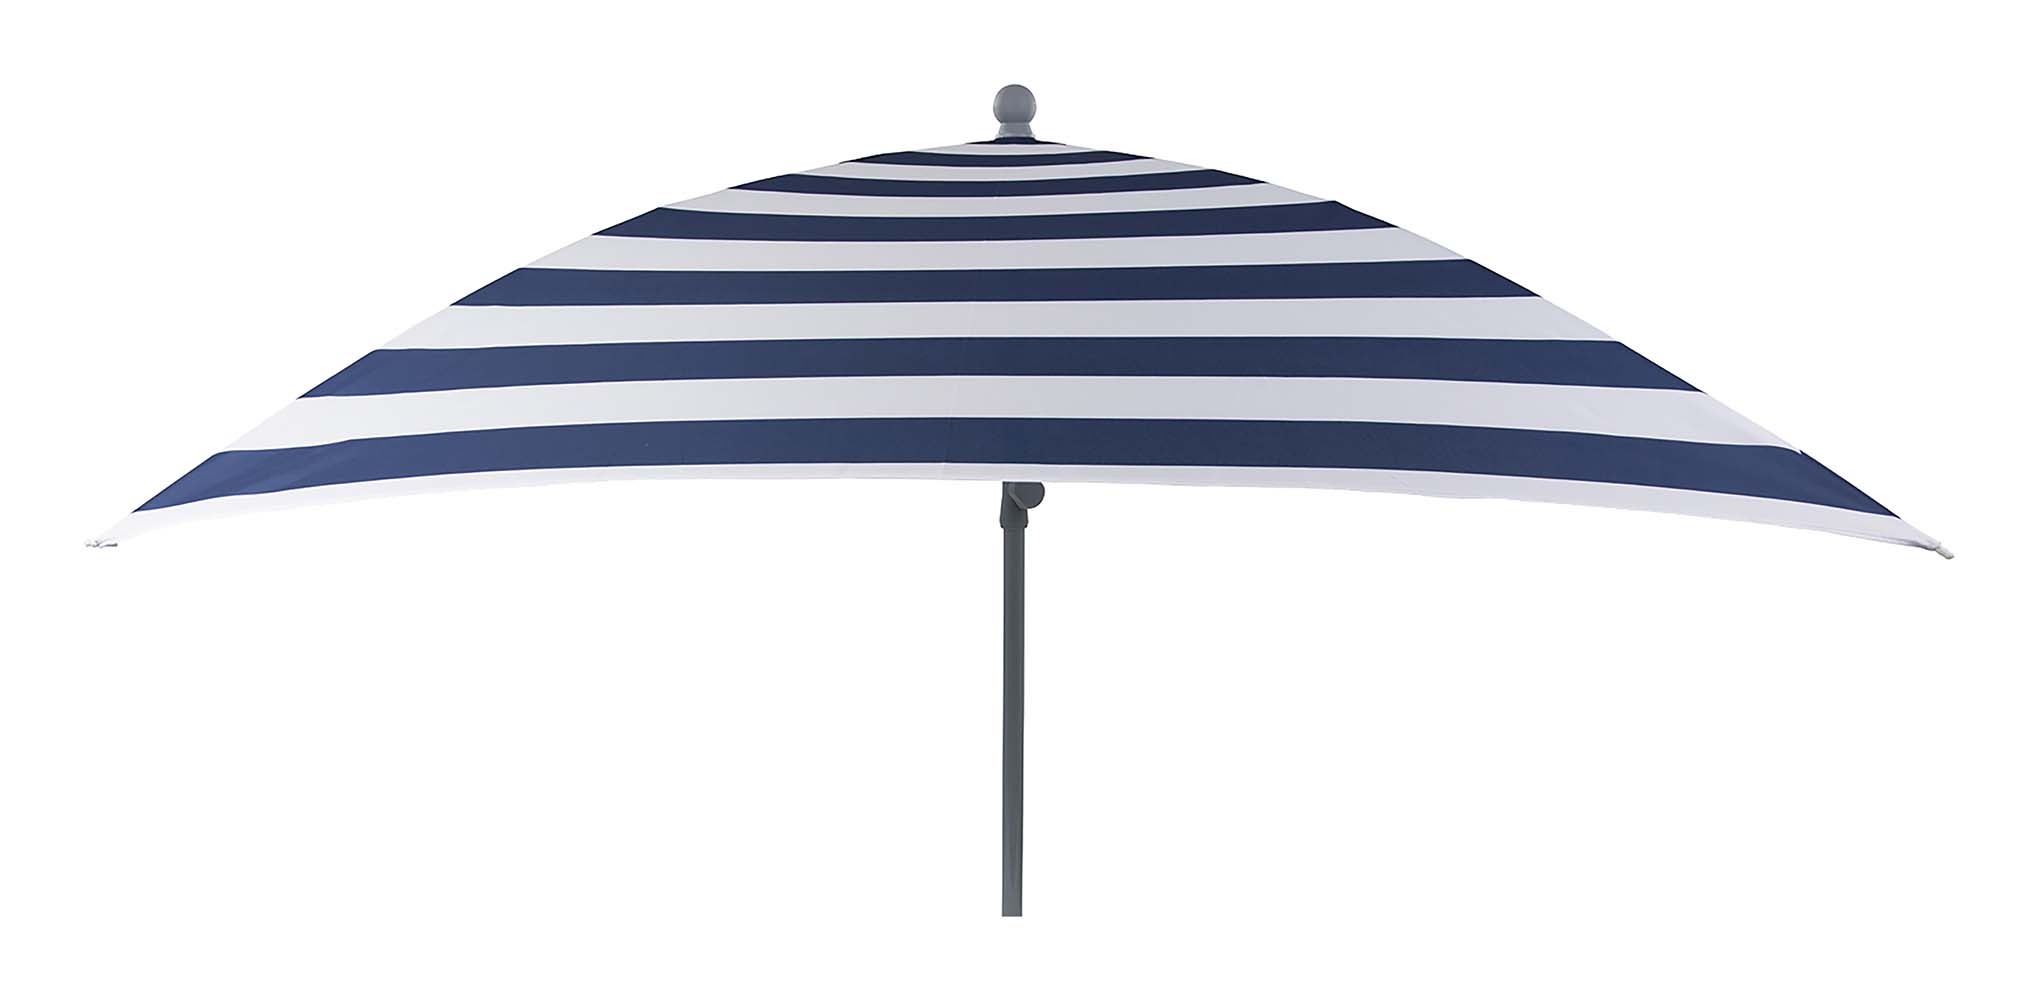 7267299 Een stevige vierkante parasol. Inclusief in hoogte verstelbare stalen steel voor in het zand, in een parasolvoet of in een tafelopening. Ideaal voor op het strand, op de camping of in de tuin. Voorzien van een stevig 160 gr/m² polyester doek. Bovendien zeer gemakkelijk mee te nemen. De steel van de parasol heeft een diameter van 32 millimeter.